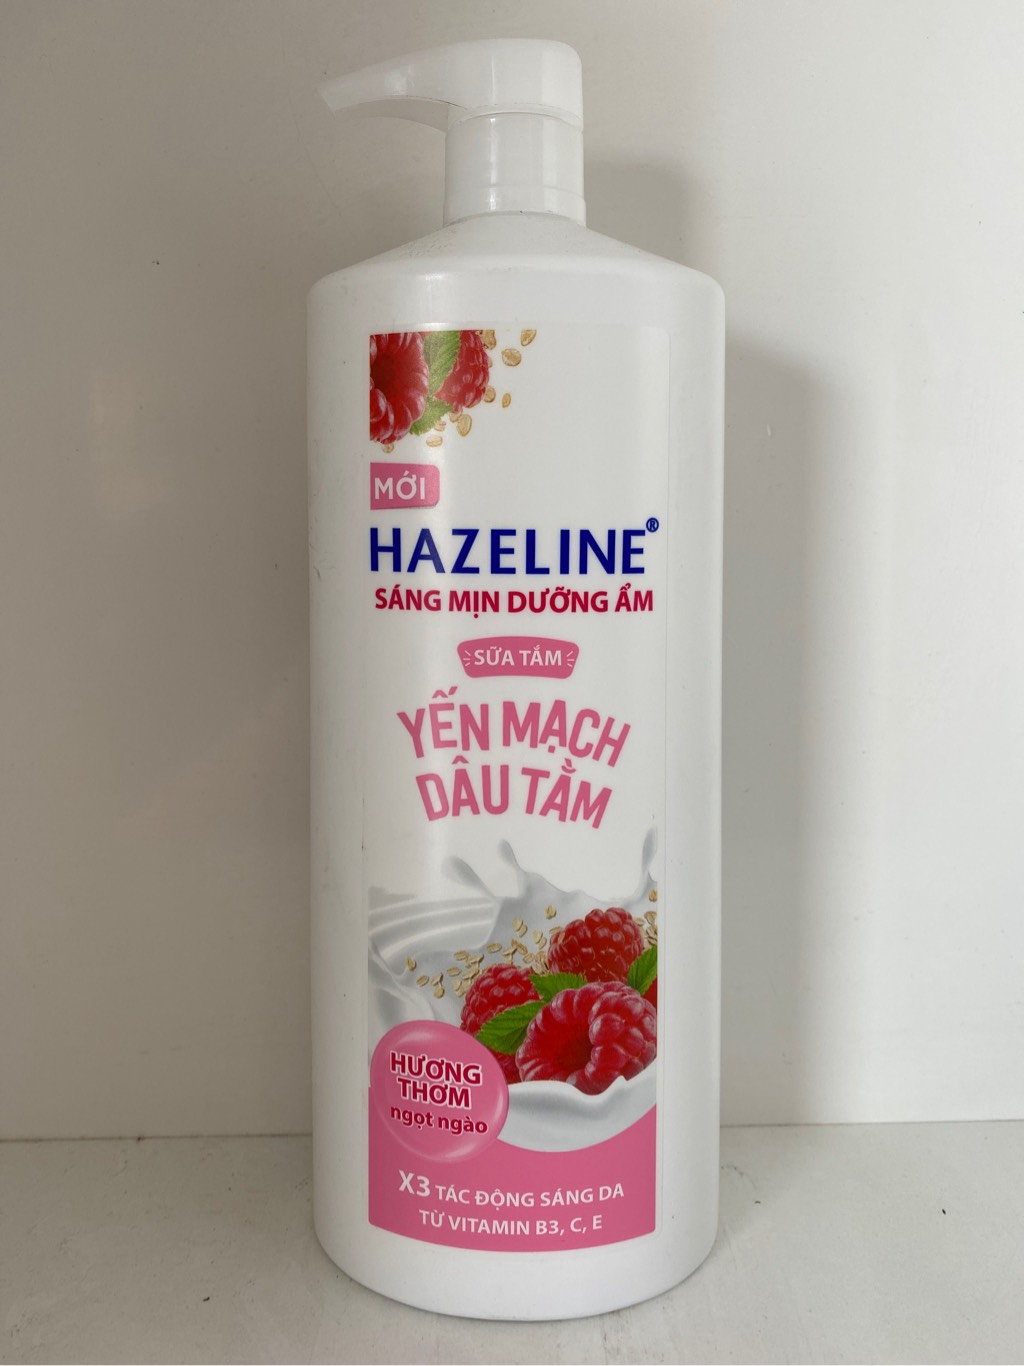 st-hazeline-yen-mach-dau-tam-1kg